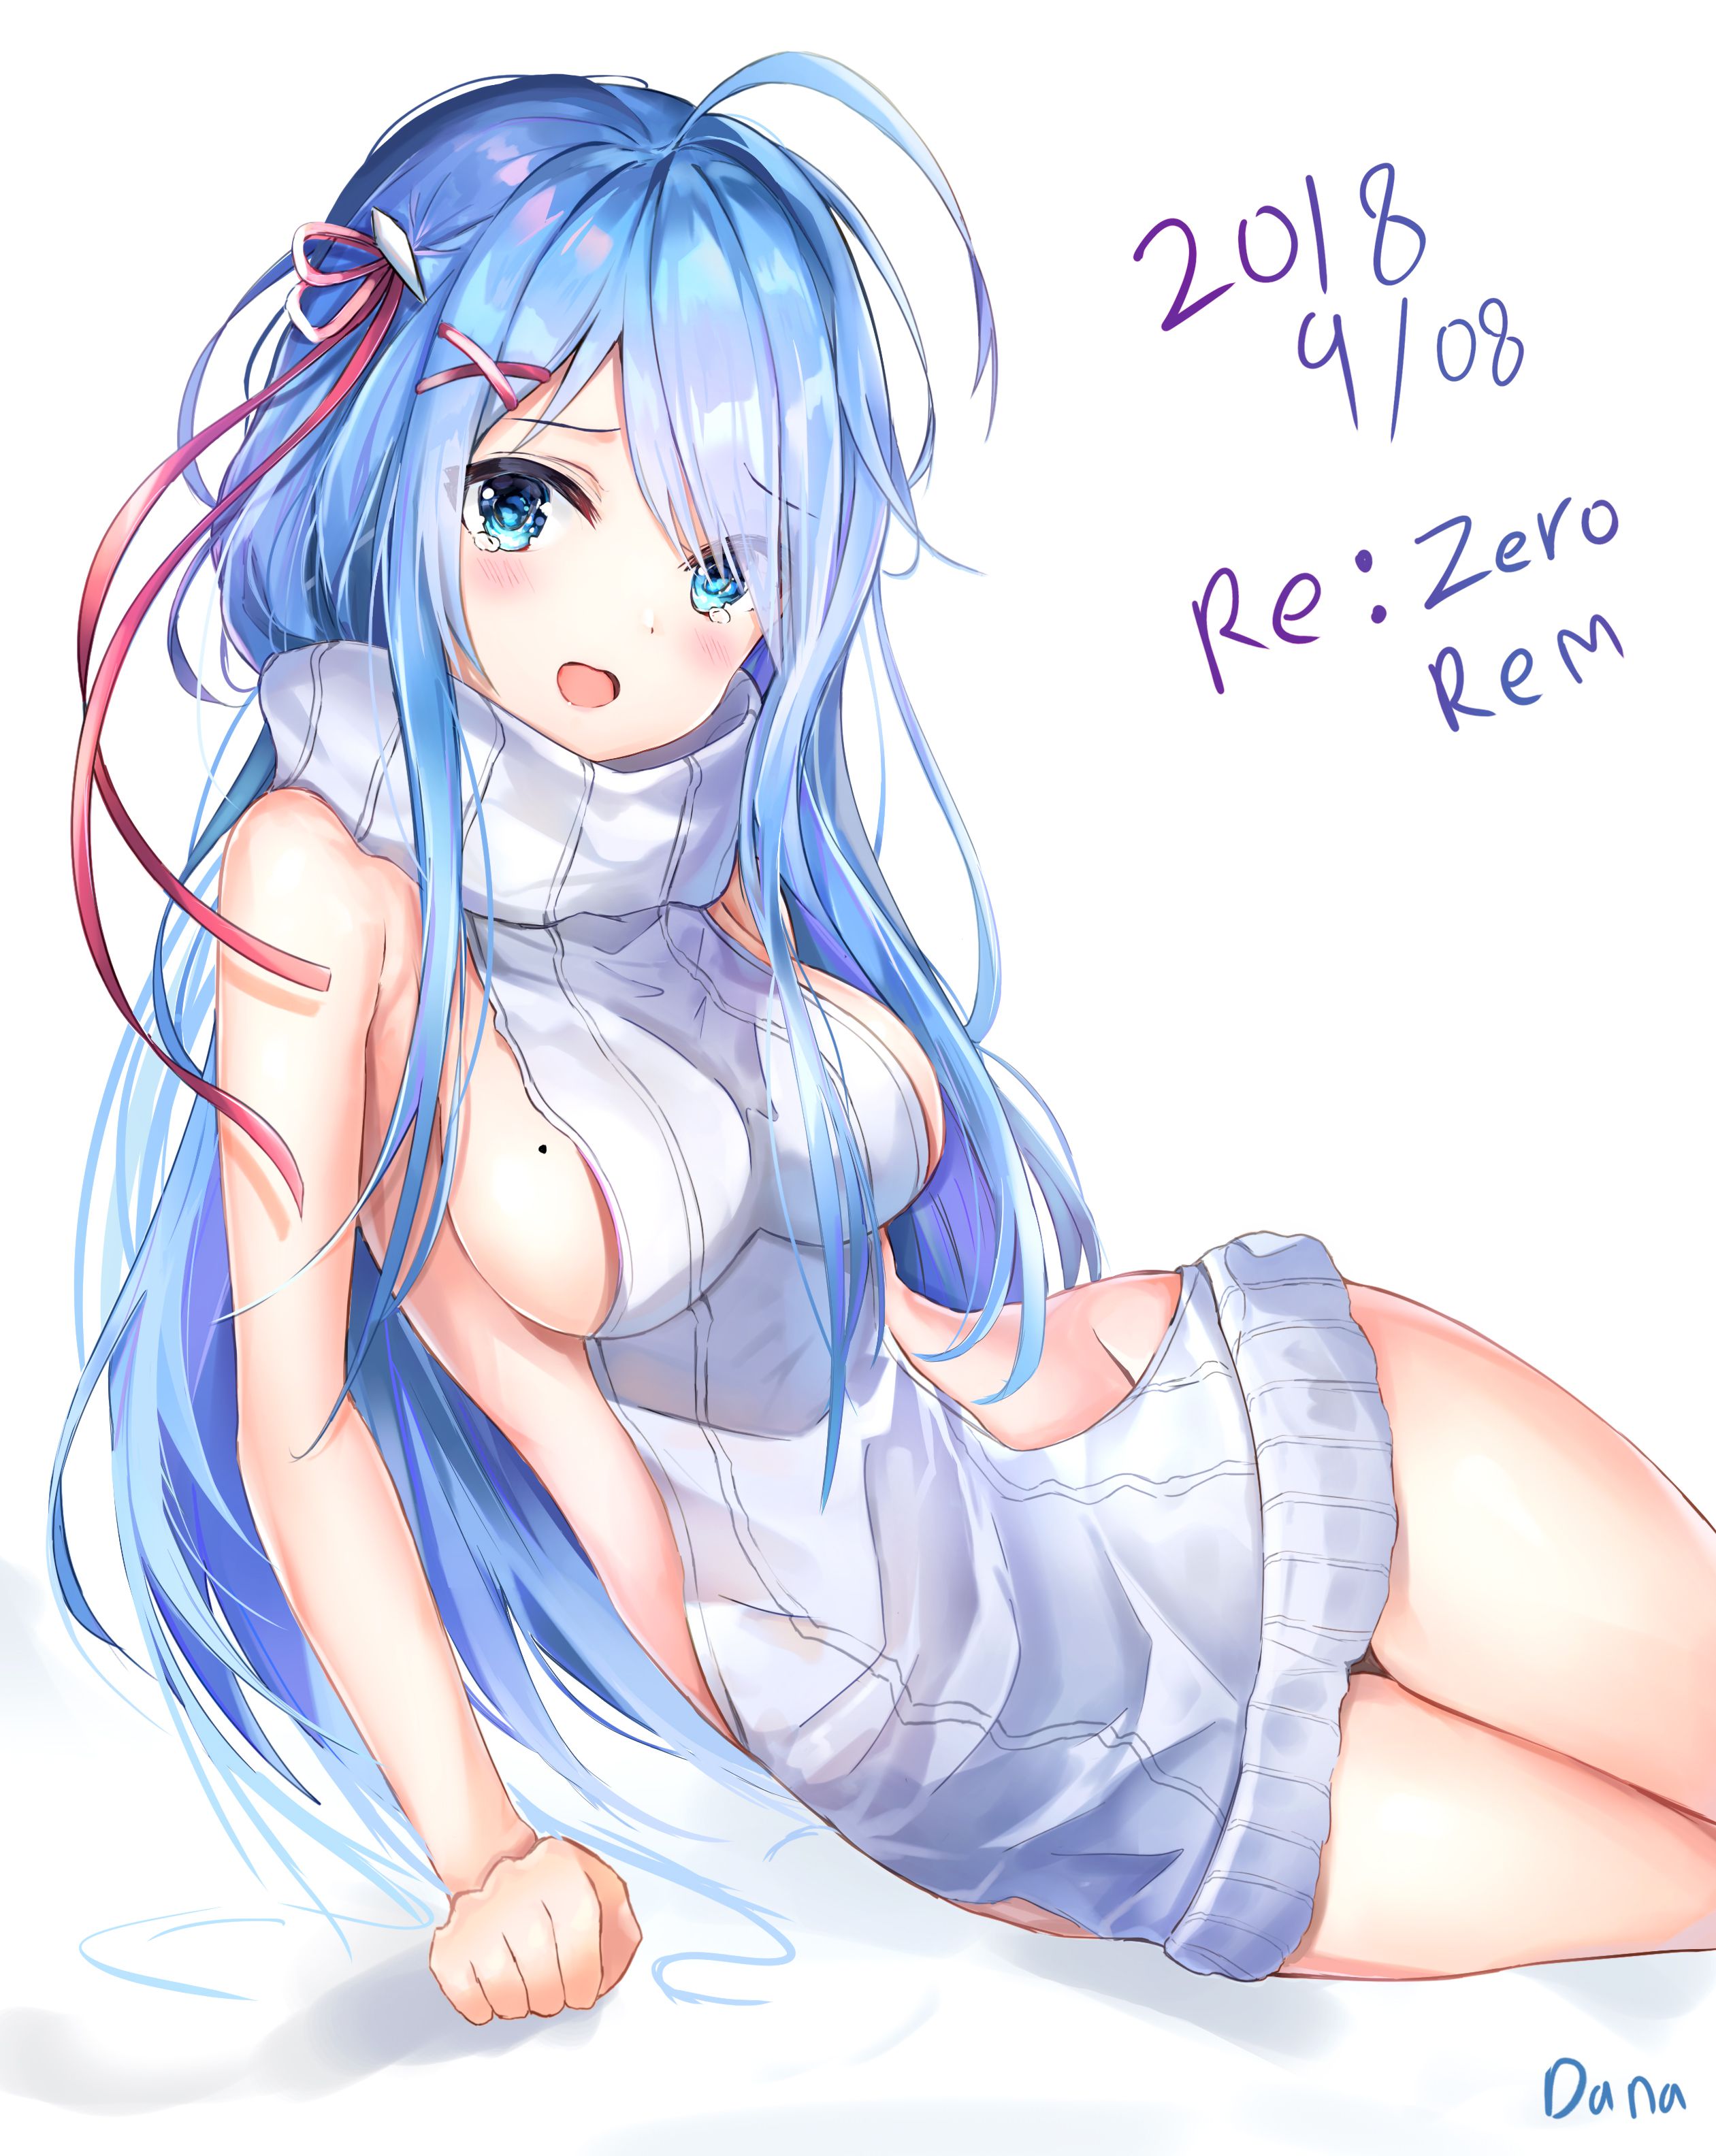 Rezero's Oni Kawaii Erotica Image Summary. vol.5 18